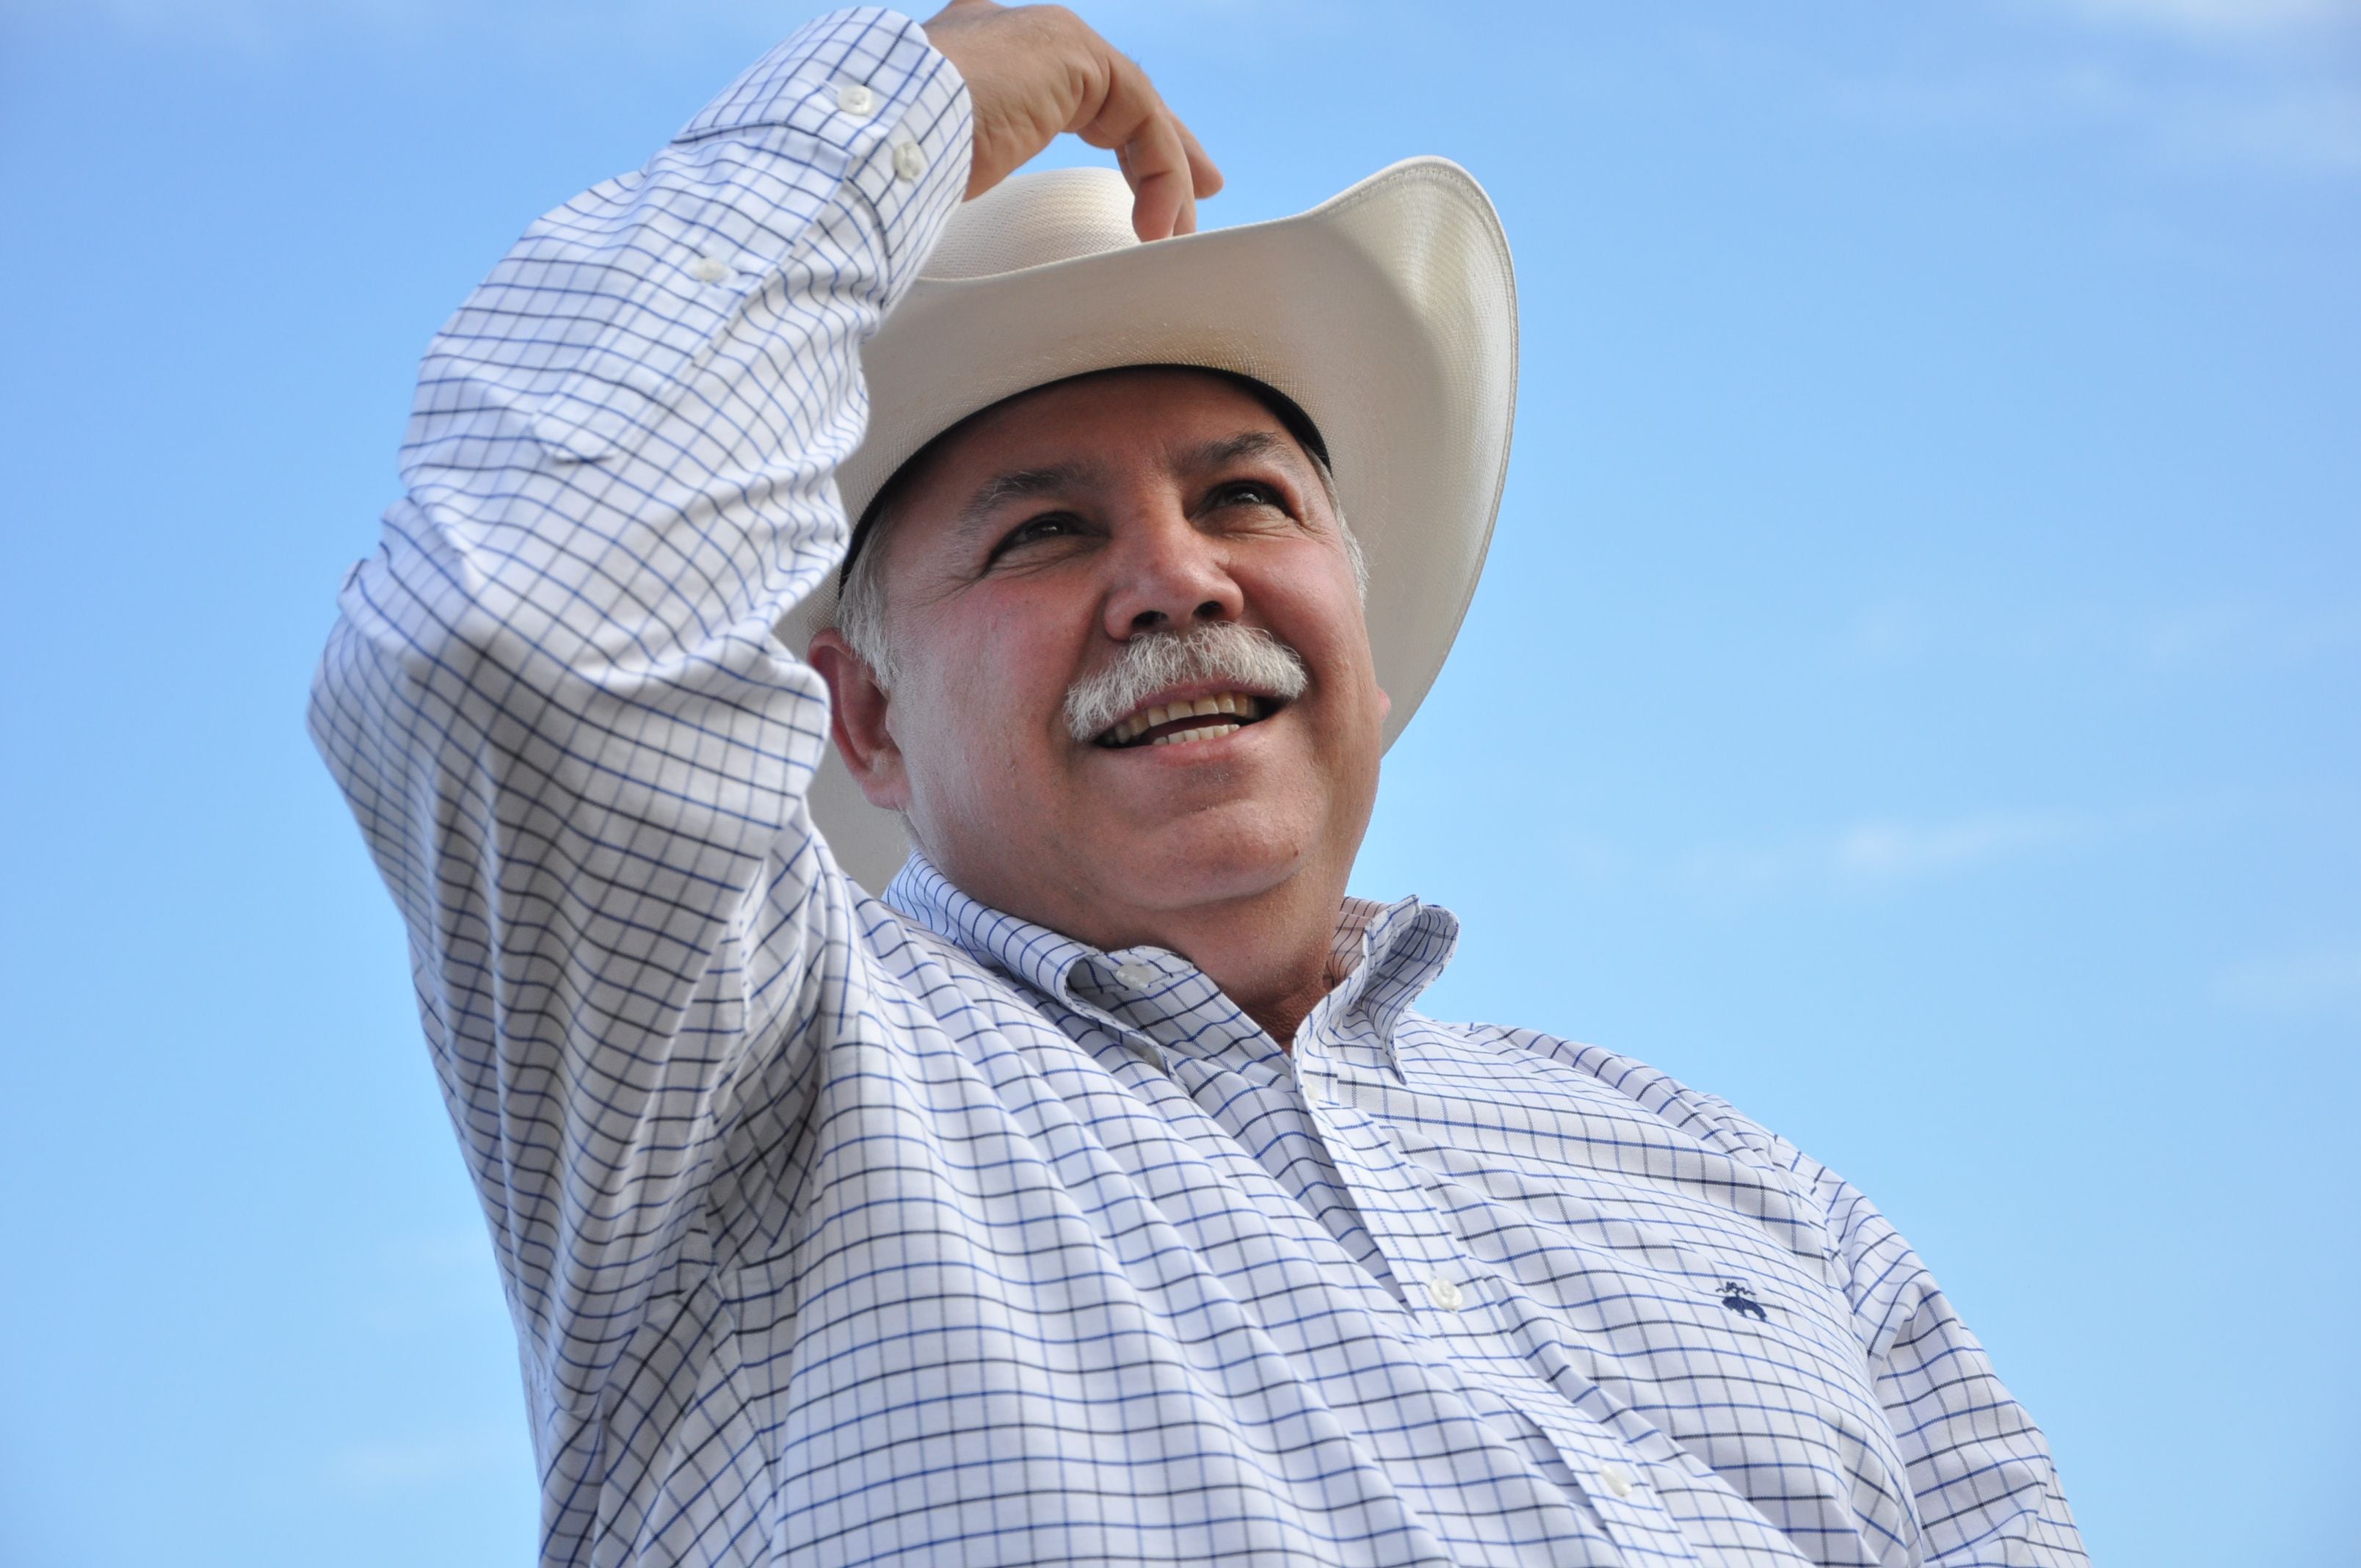 César Verástegui “el Truko”, nuevo candidato del PAN a diputado federal tras retiro de aspiración de Francisco García Cabeza de Vaca